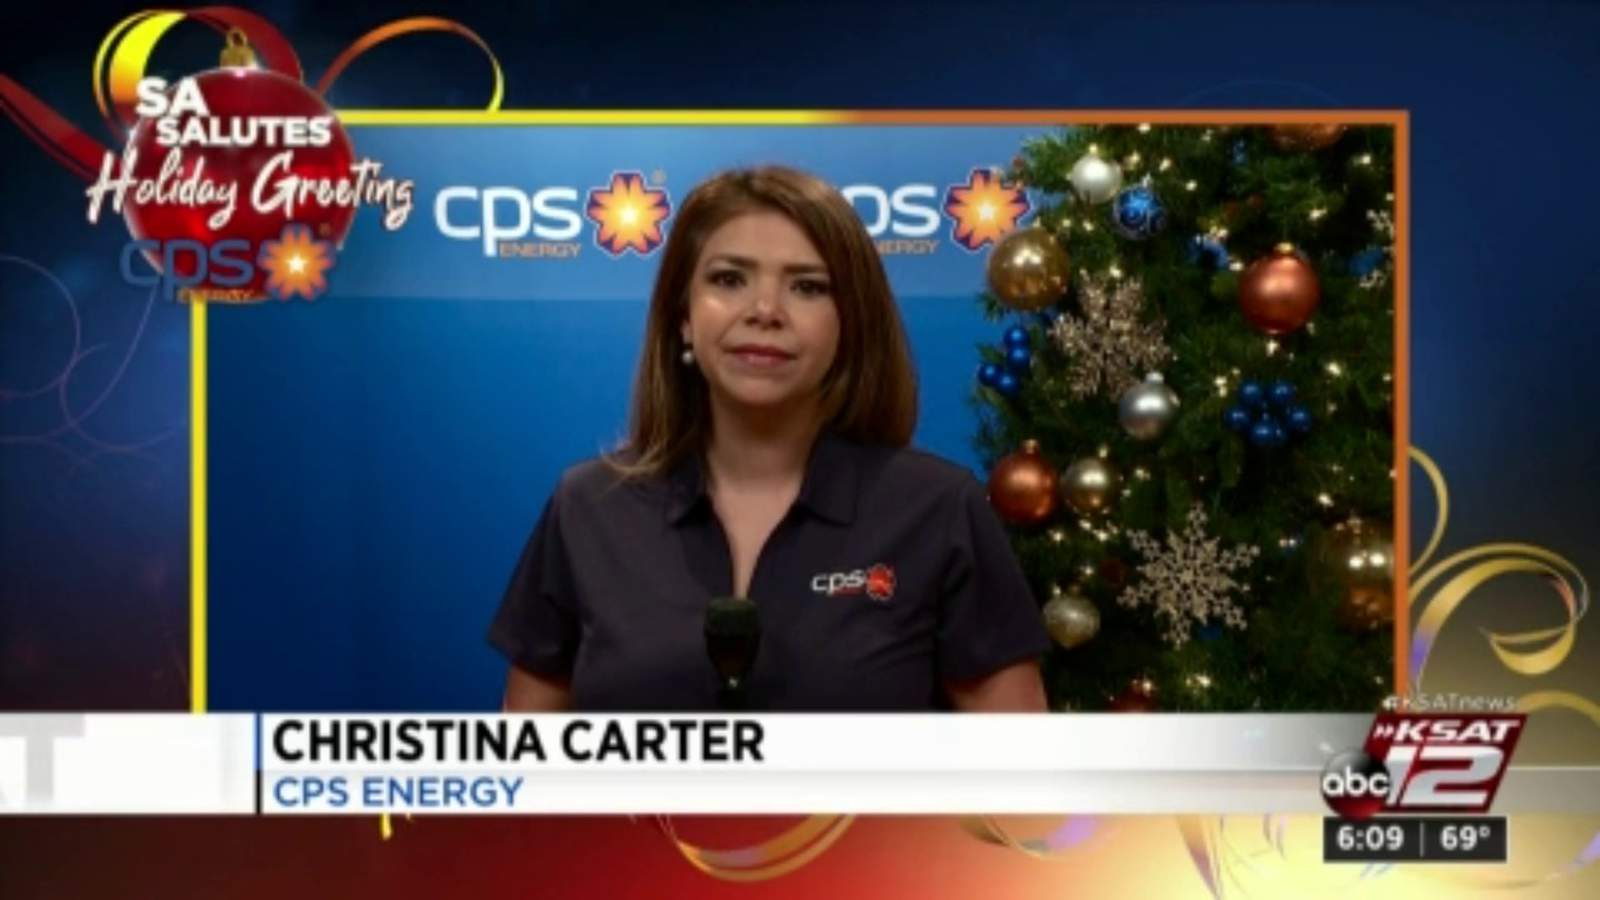 SA Salutes Holiday Greeting: Christina Carter, CPS Energy